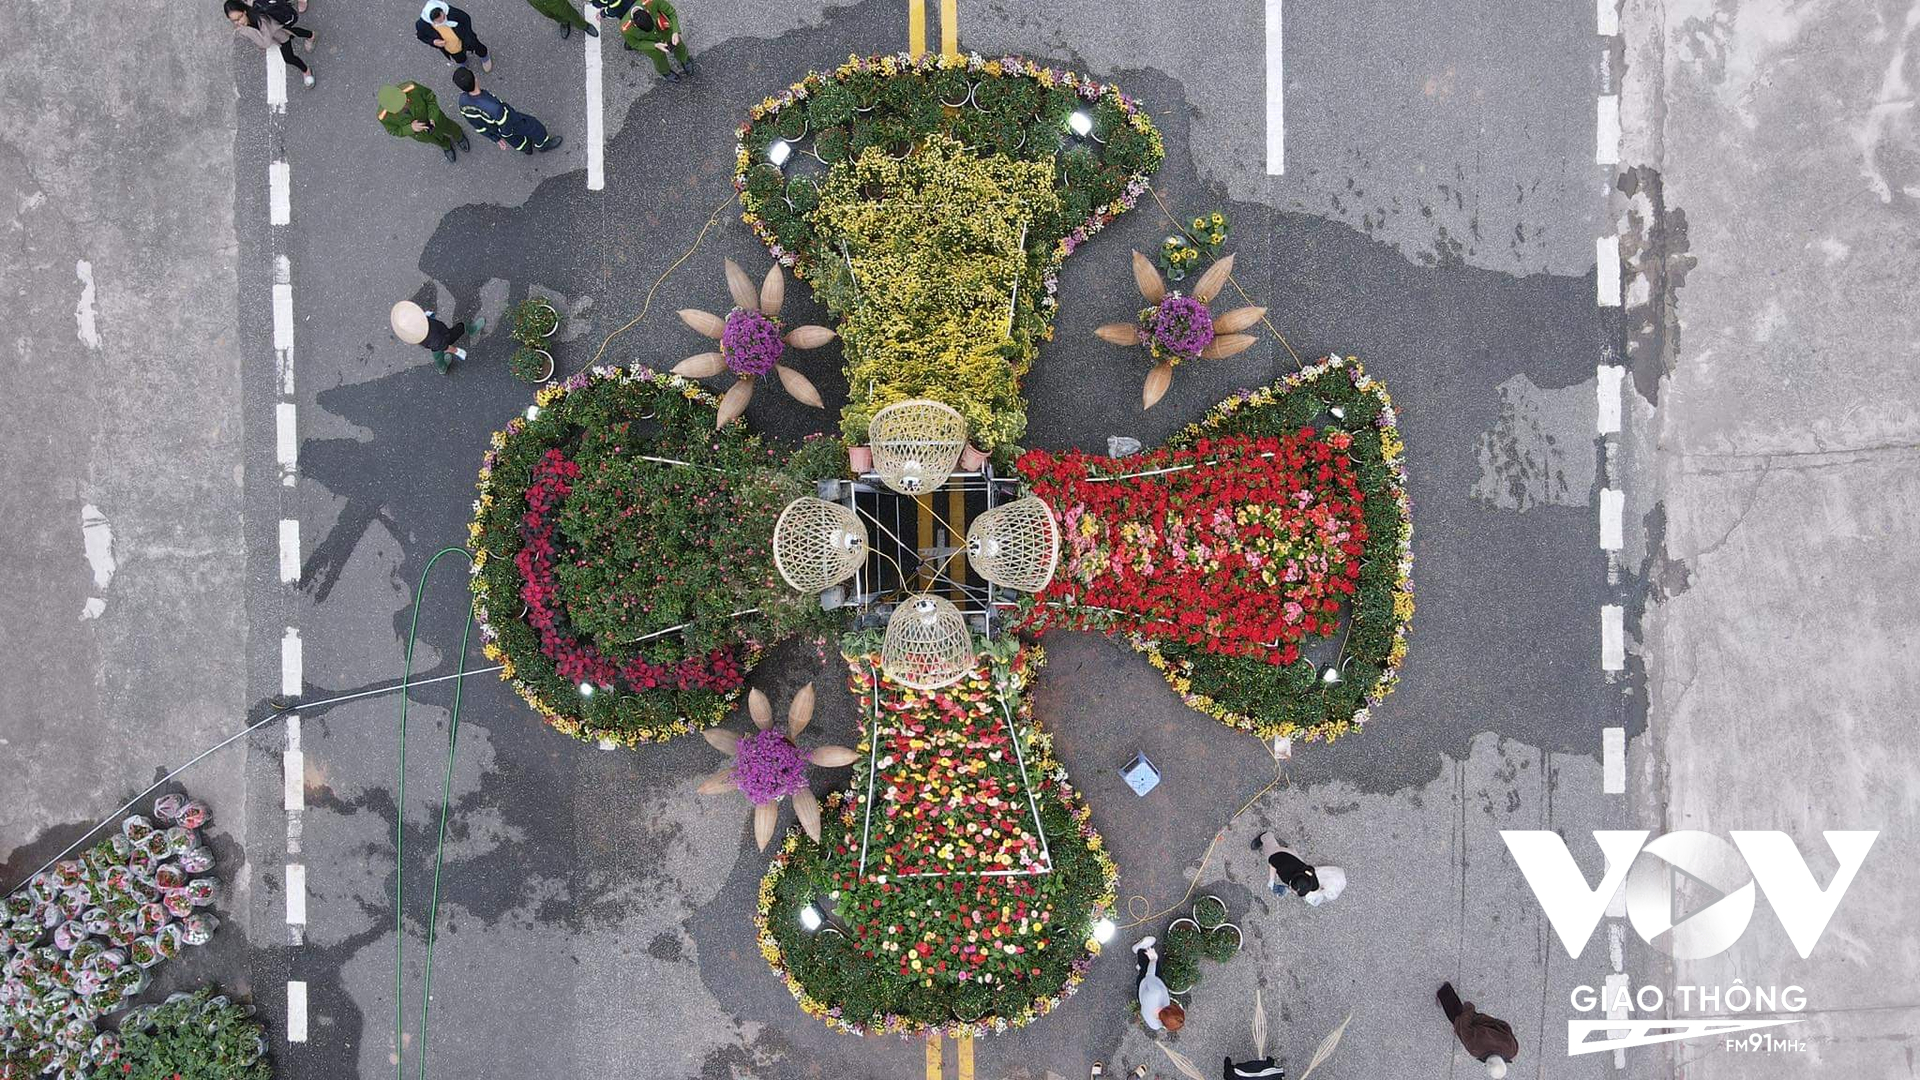 Thời điểm này các nhà vườn tại Mê Linh đang tất bật chuẩn bị cho Festival hoa 2022 được tổ chức từ ngày 9-11/12.